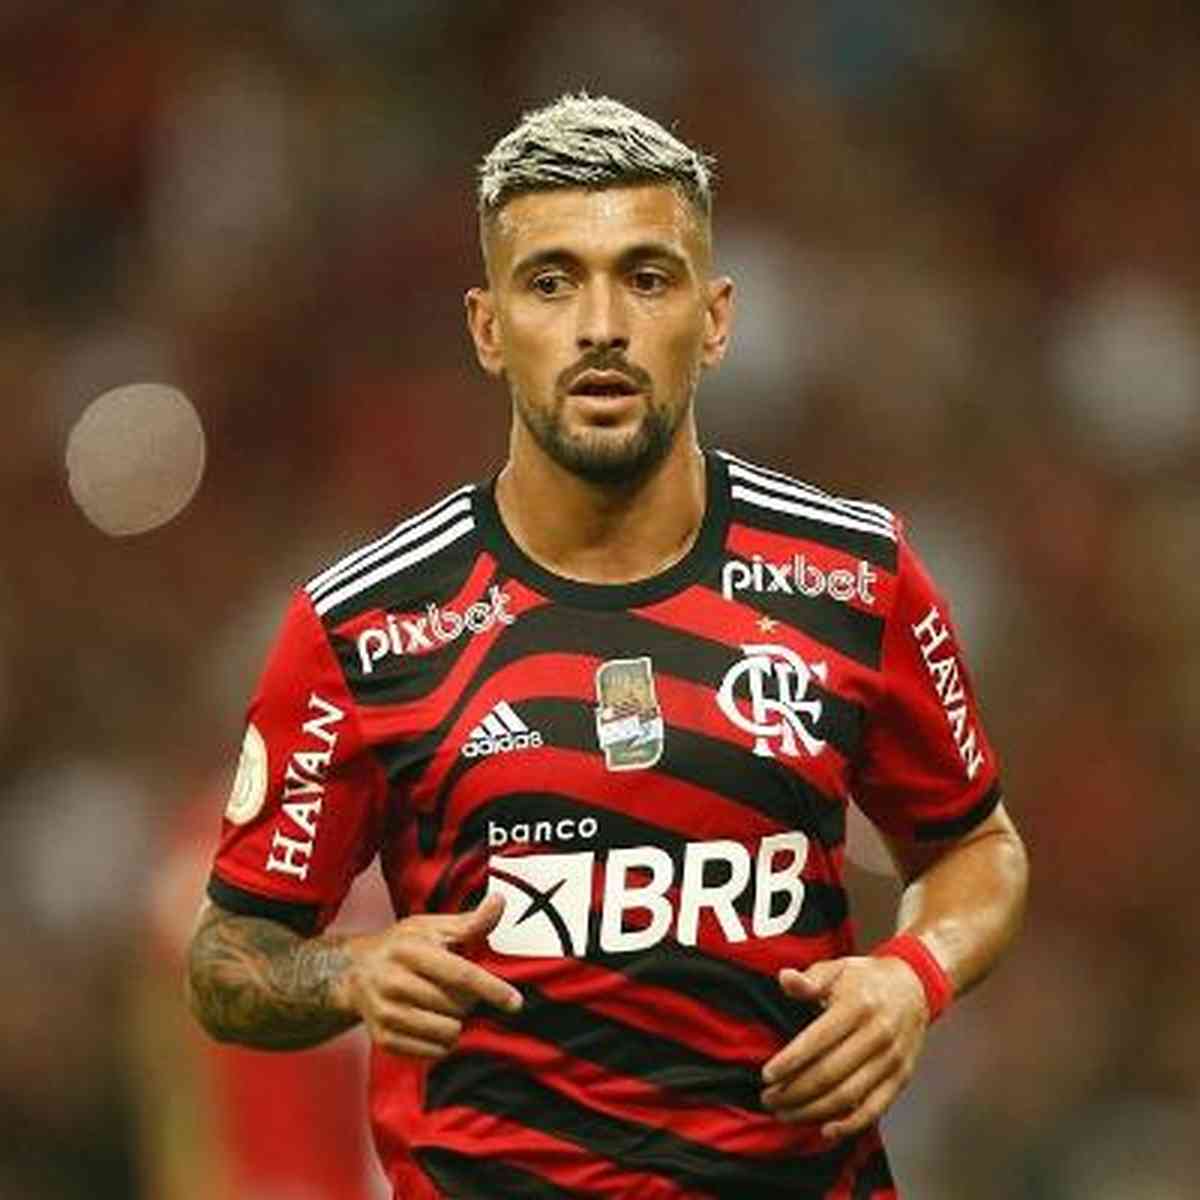 Arrascaeta treina e pode reforçar Flamengo no jogo contra o Corinthians